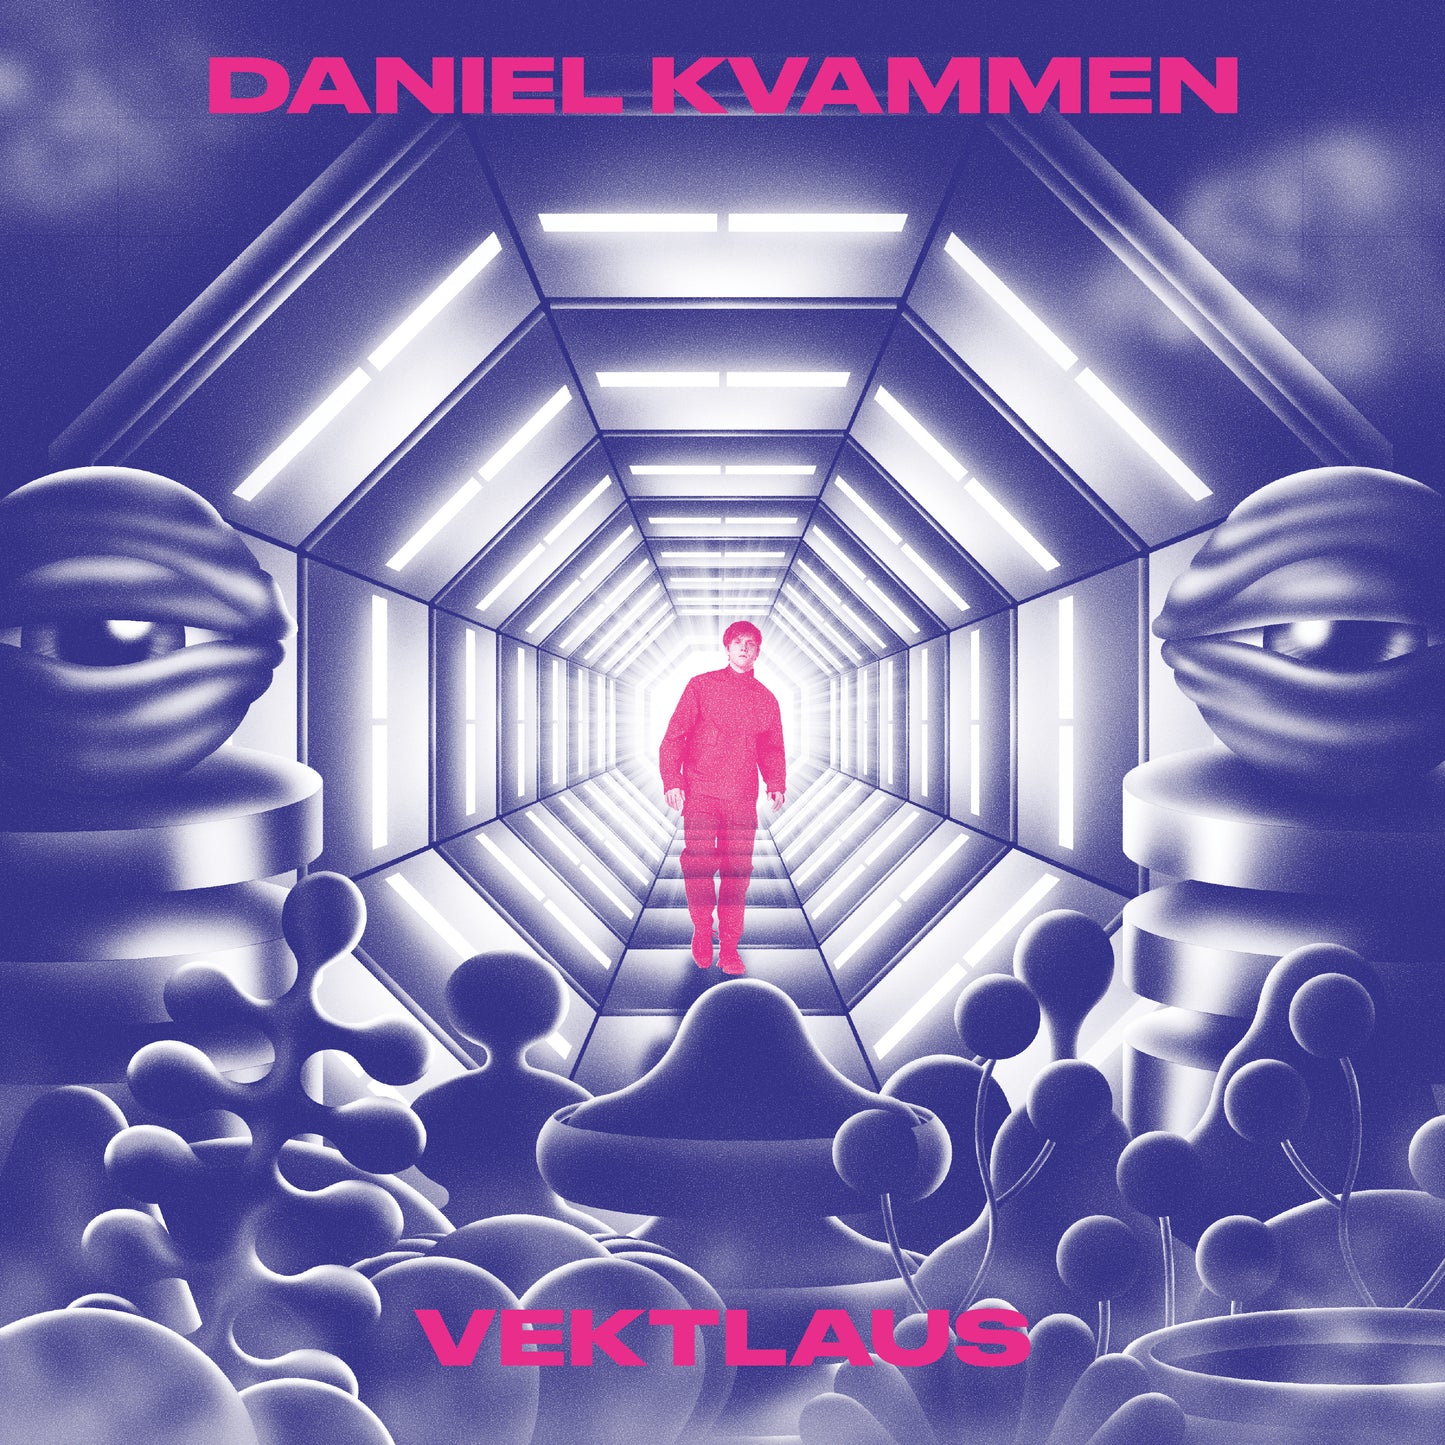 Daniel Kvammen - Vektlaus (LP)